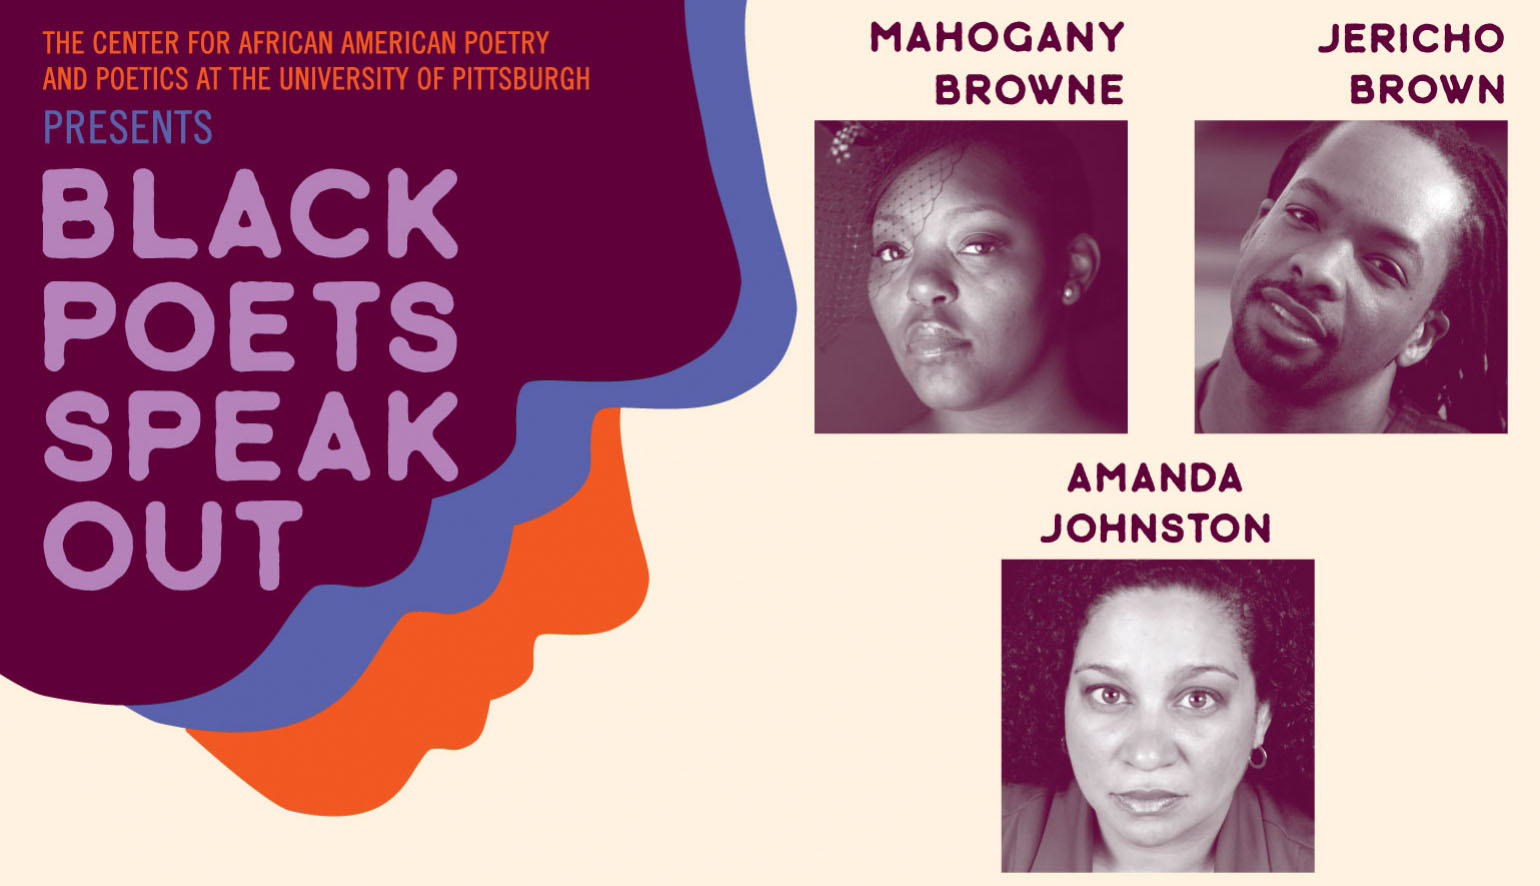 black poets speak out poster 